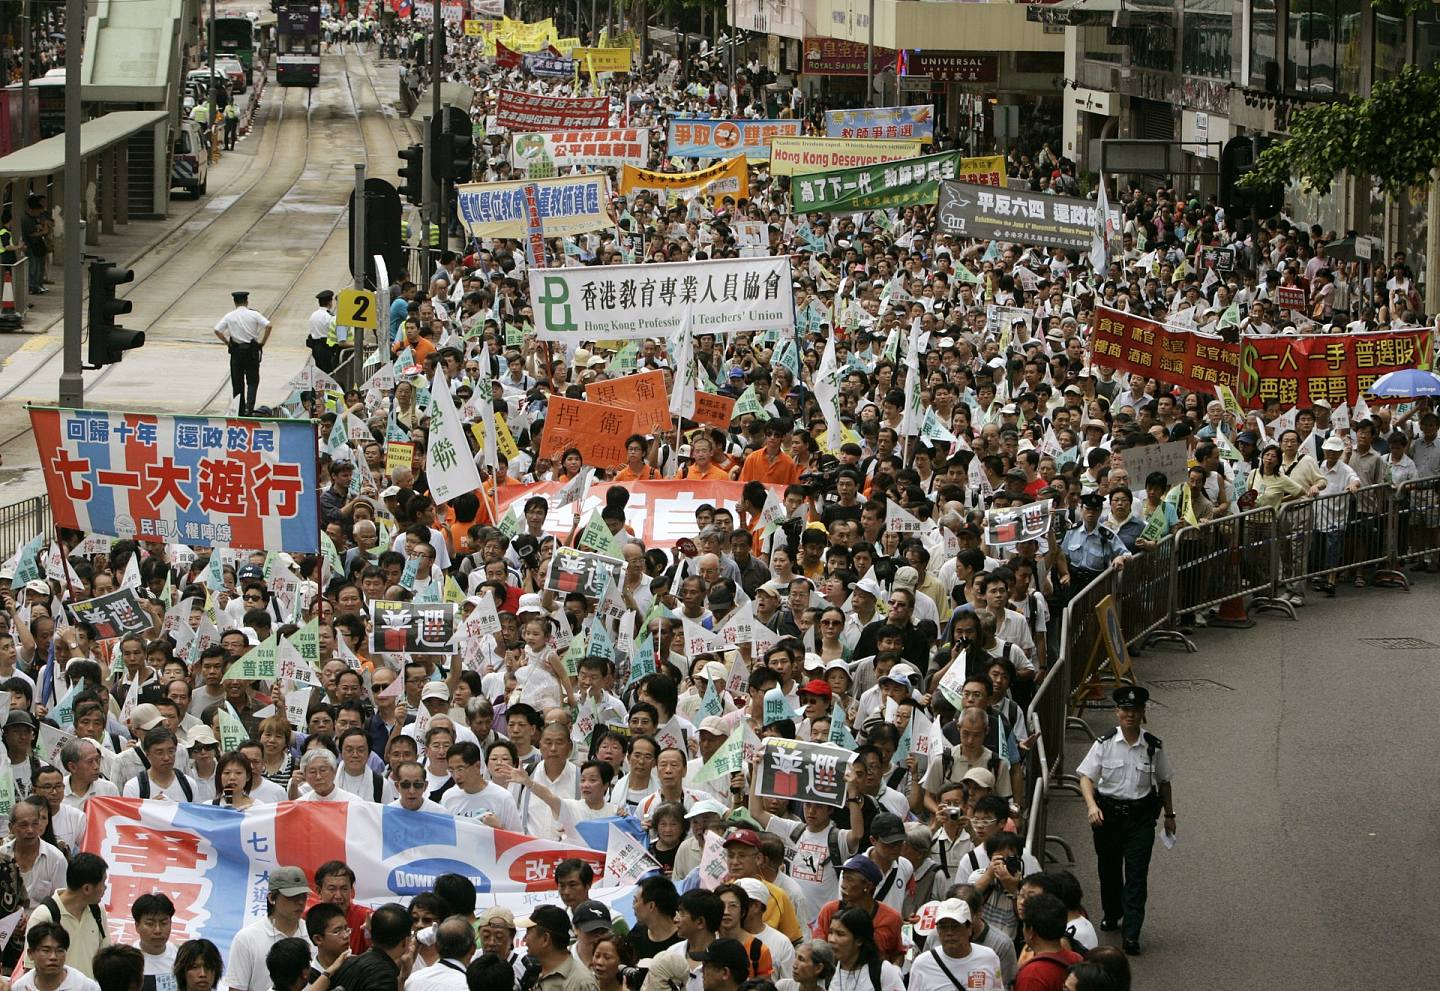 2007年是香港主权移交10周年，游行主题「争取普选、改善民生」，民阵指游行人数达6.8万人。 （路透社）